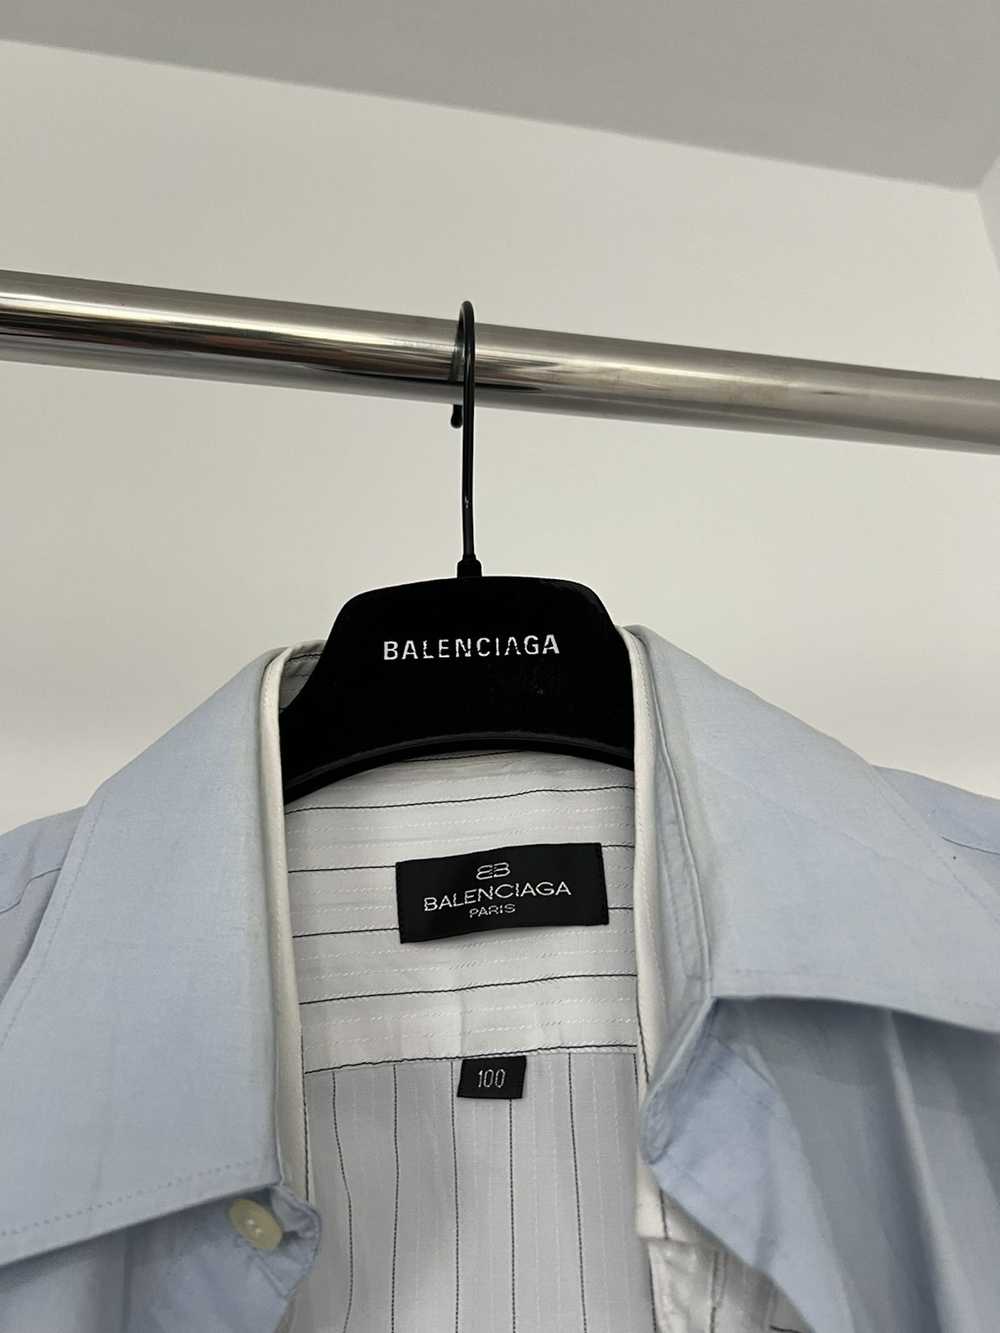 Balenciaga Balenciaga Hybrid Double Layer Shirt - image 6